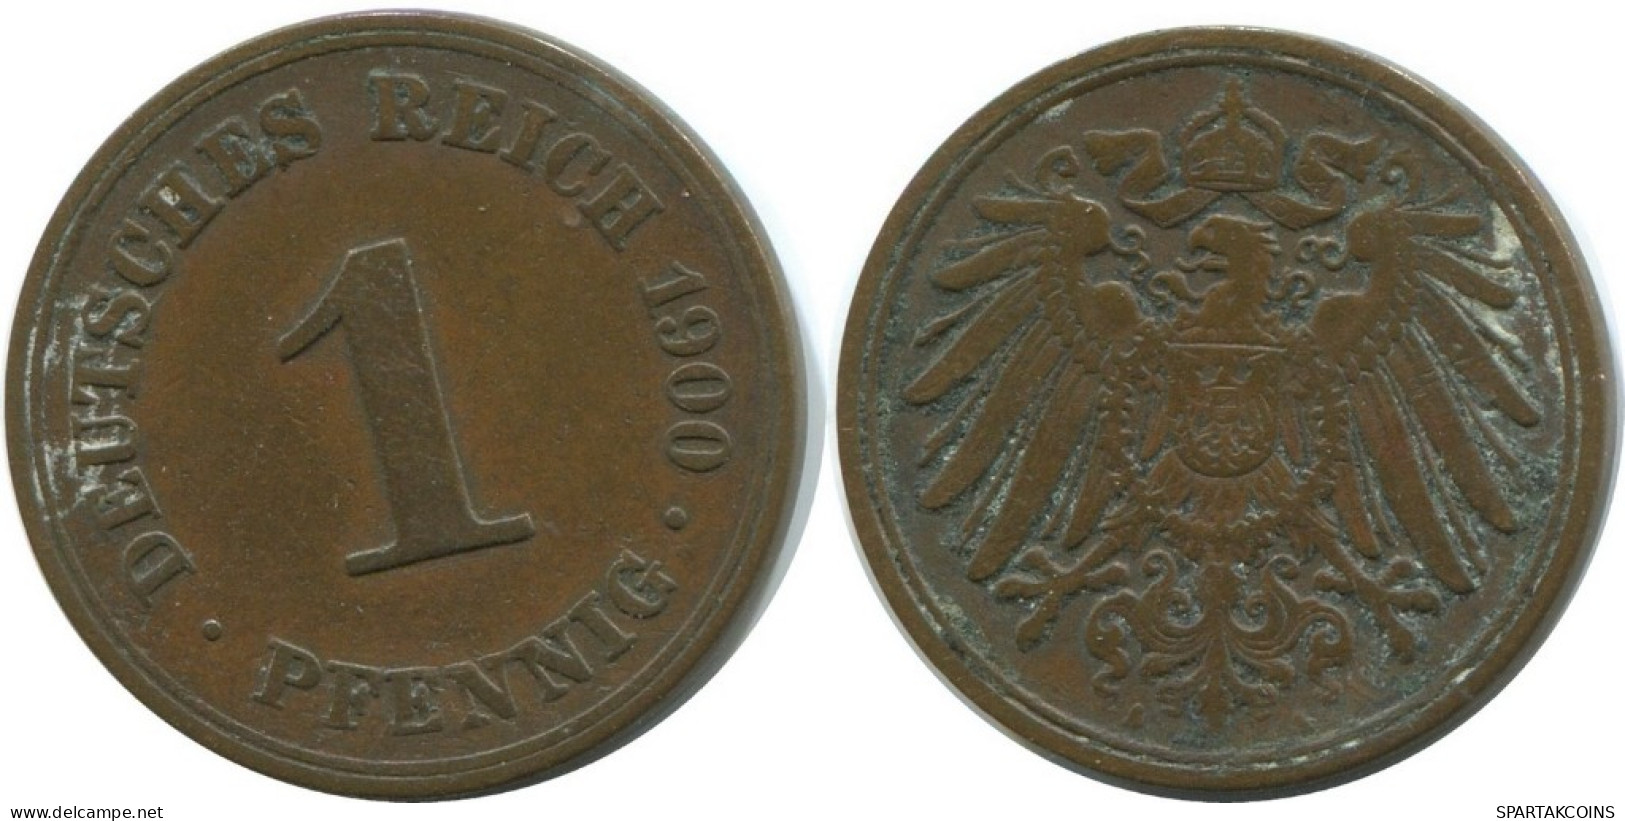 1 PFENNIG 1900 A ALEMANIA Moneda GERMANY #AD438.9.E.A - 1 Pfennig